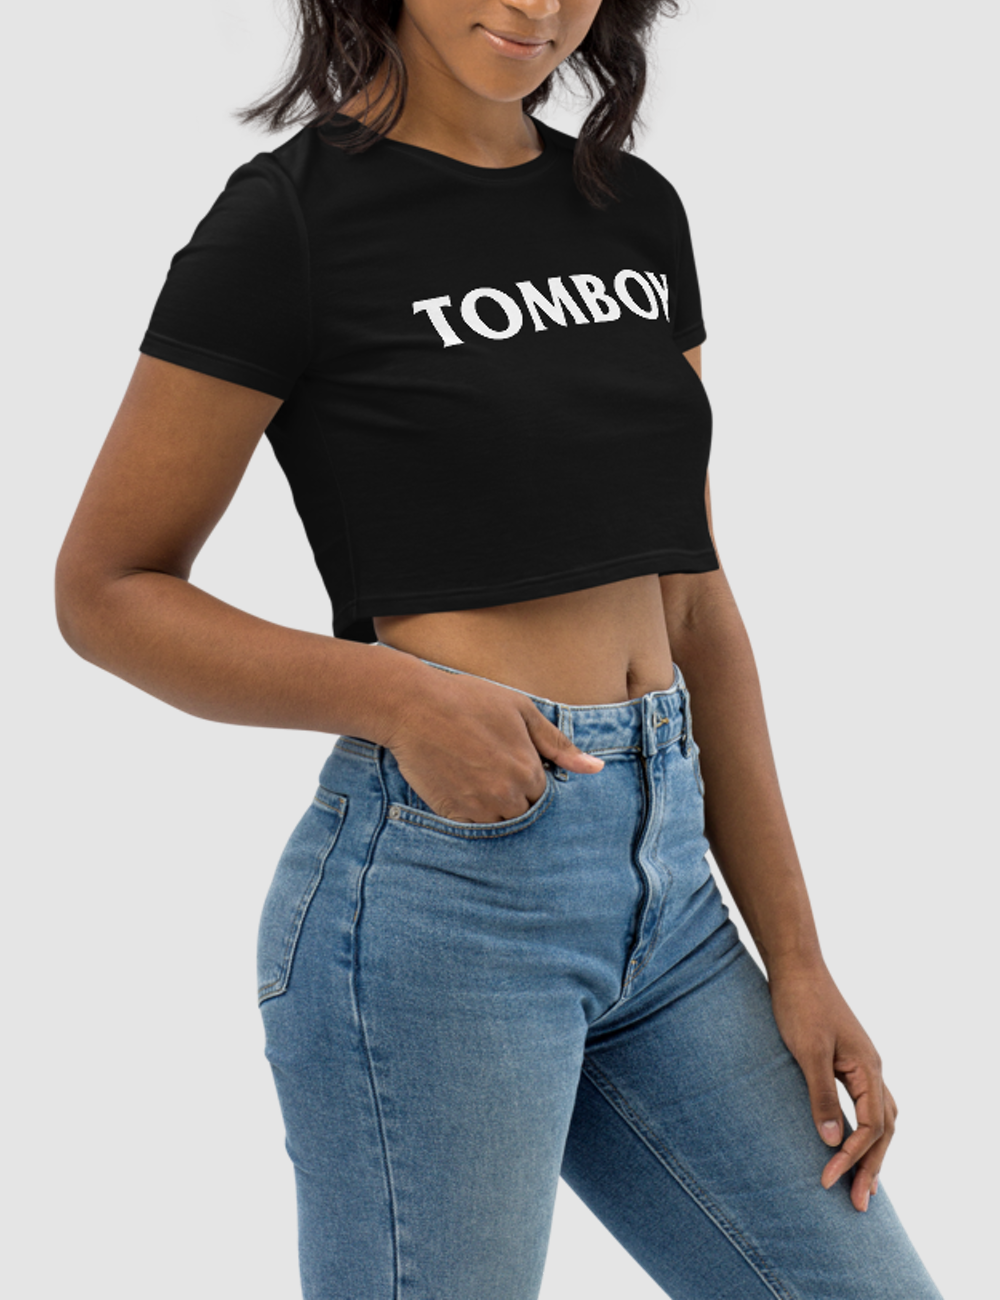 Tomboy | Women's Crop Top T-Shirt OniTakai